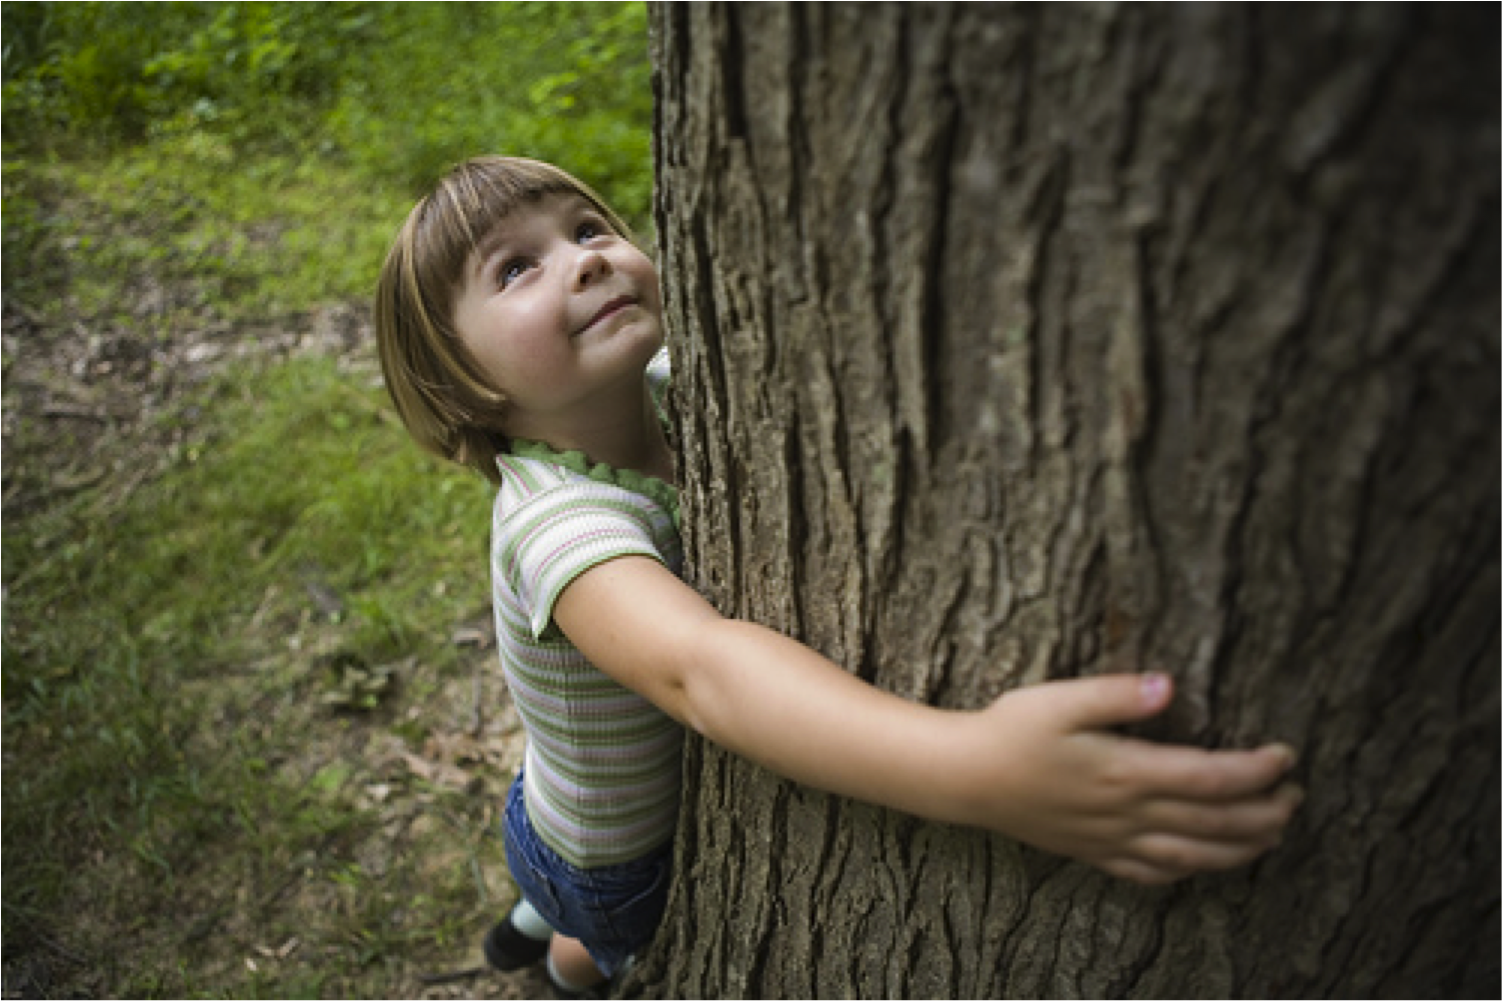 Children natural. Дерево для детей. Дети и природа. Природа деревьев для детей. Любовь детей к природе.